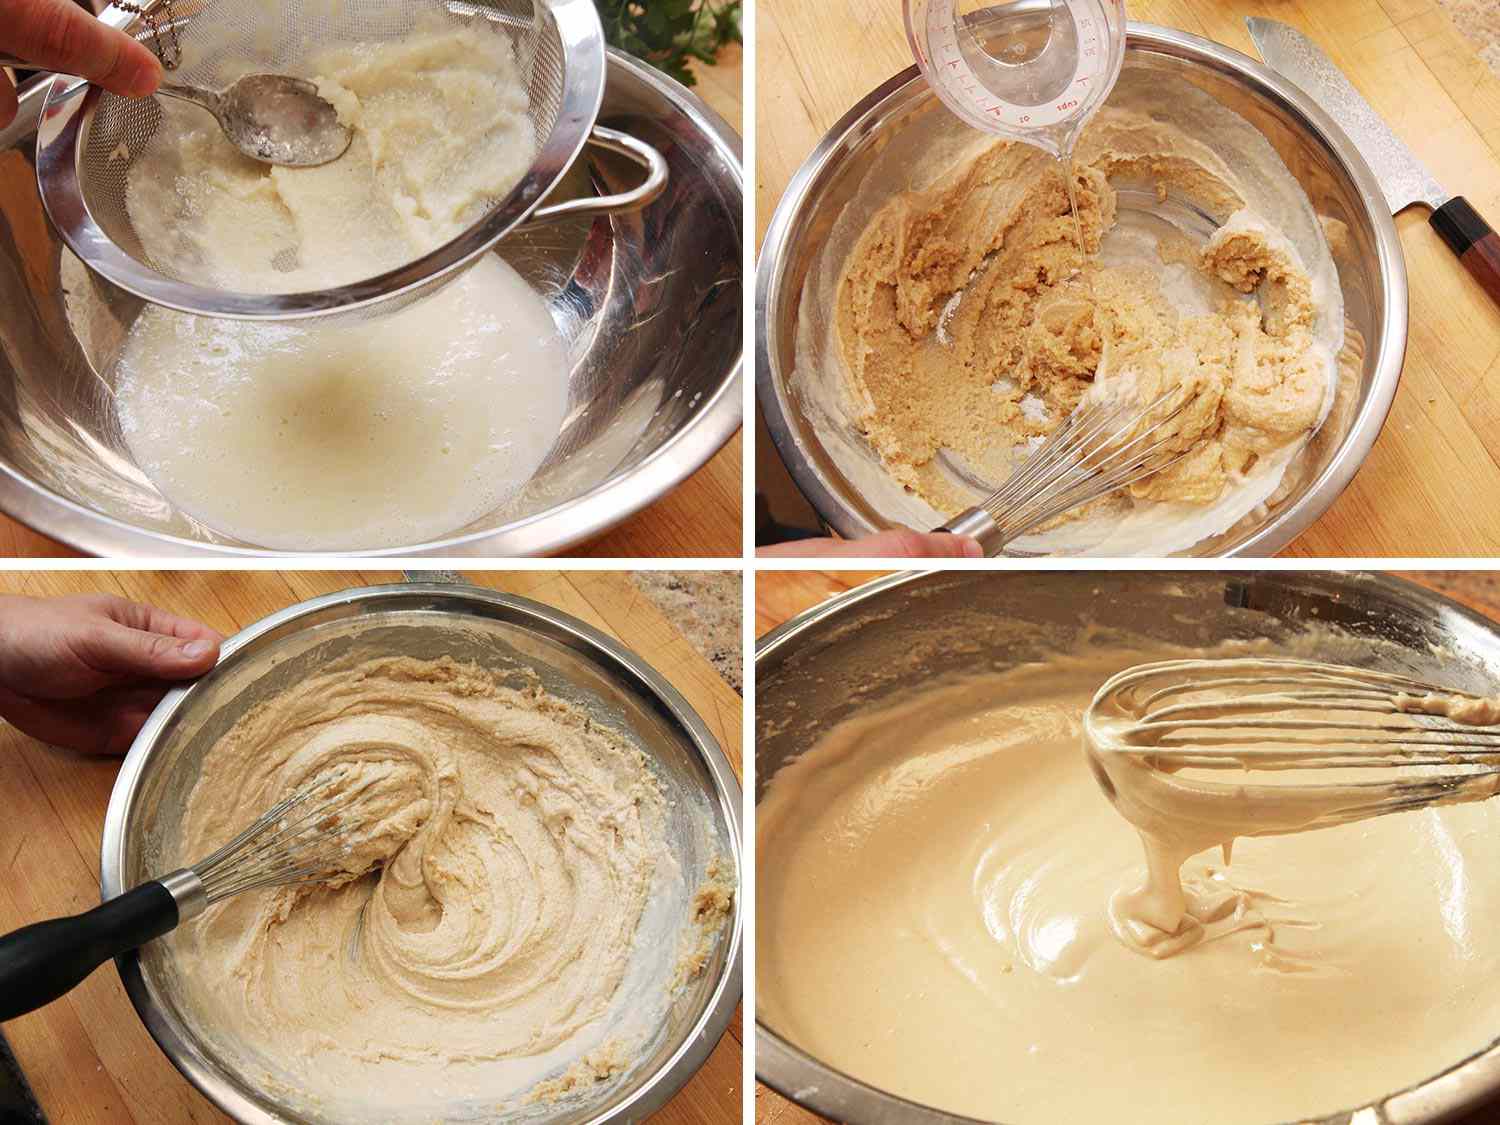 制作芝麻酱的过程拼贴图:过滤蒜柠檬汁混合物，加入芝麻酱搅拌，再加入水搅拌。